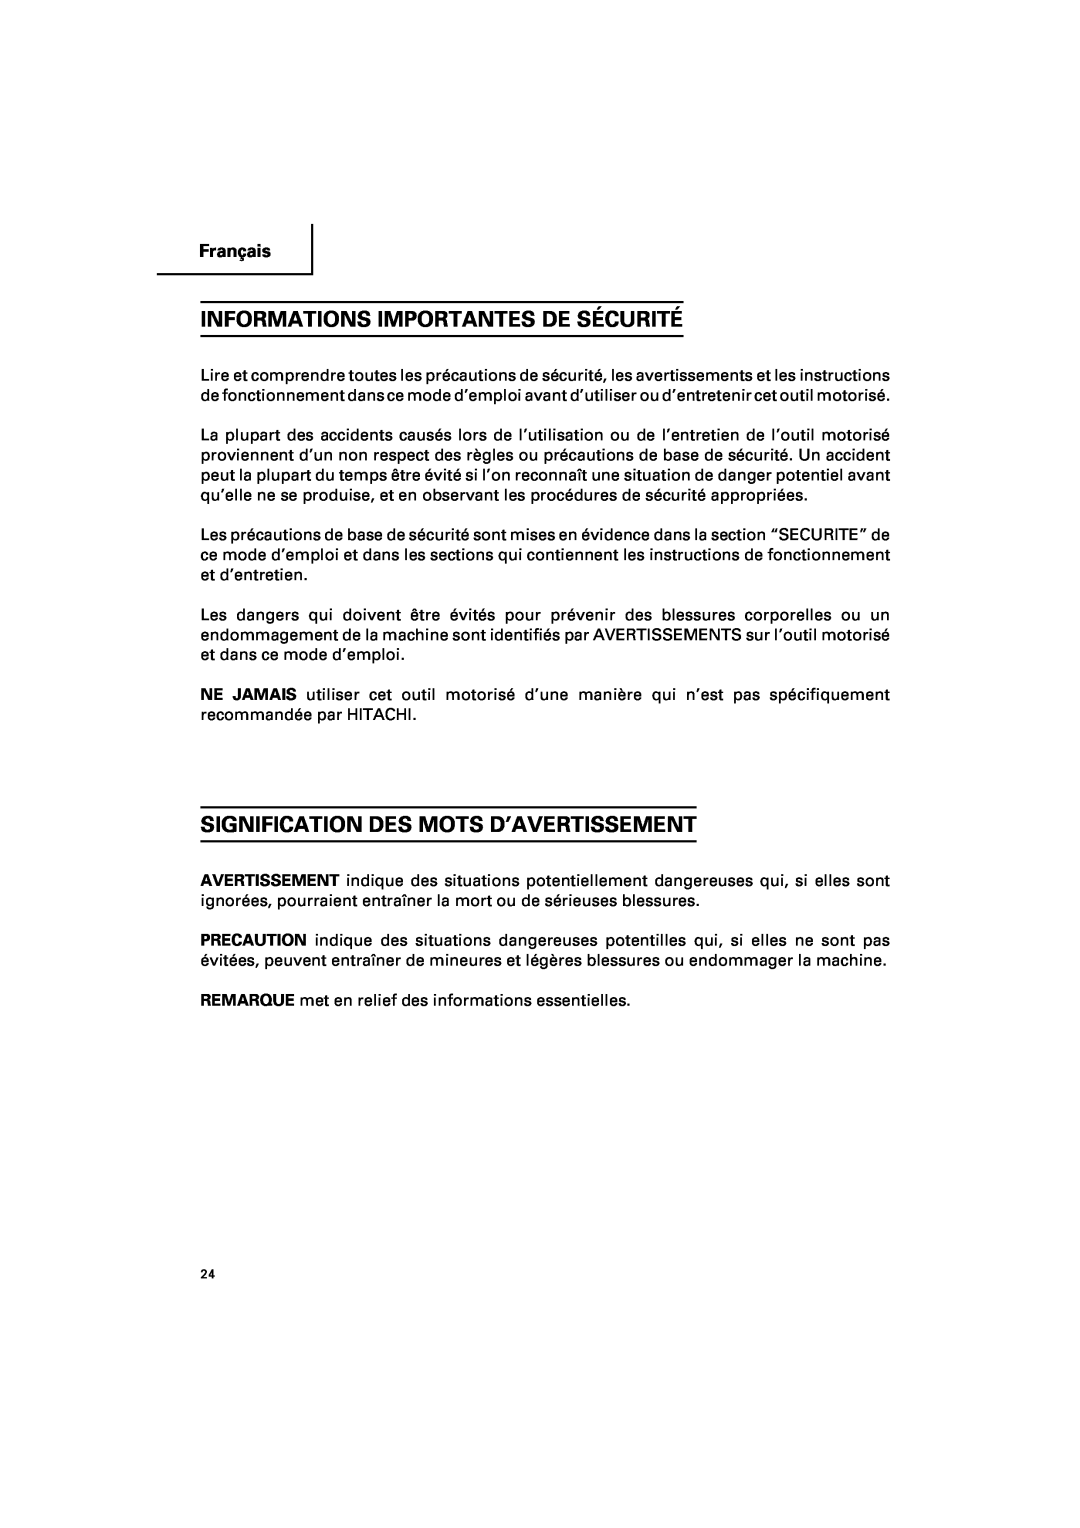 Hitachi DV 18DV, DV 14DV Informations Importantes De Sécurité, Signification Des Mots D’Avertissement, Français 